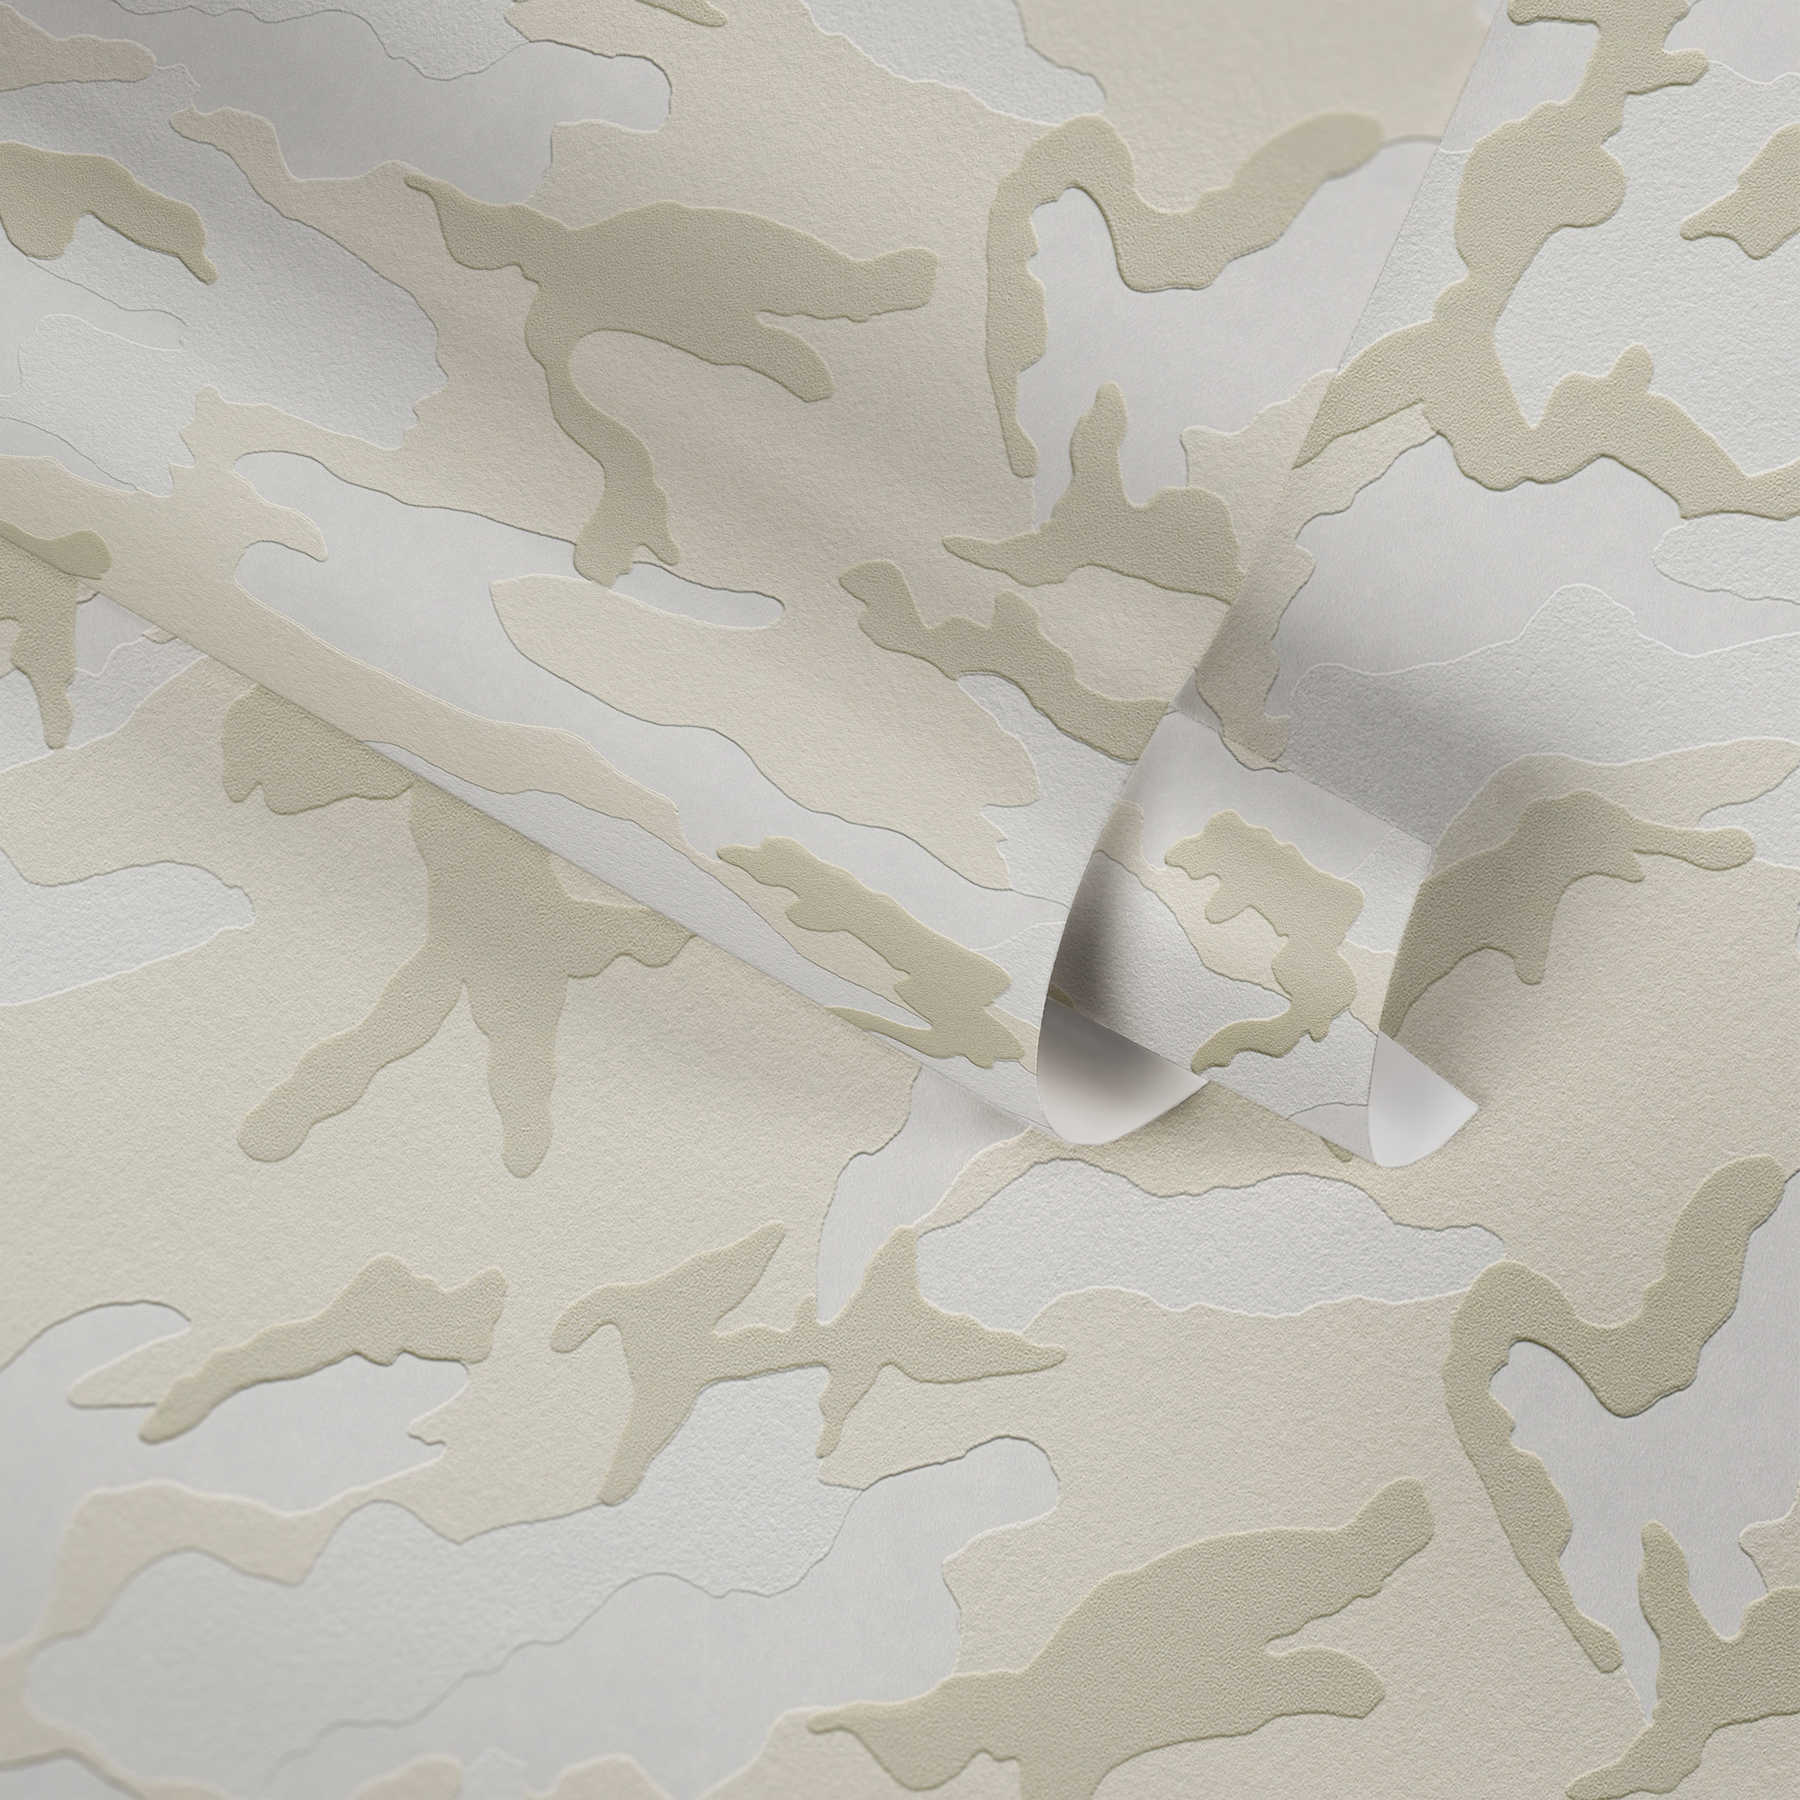             Camouflage patroon behang sneeuw, camouflage vliesbehang - grijs, crème
        